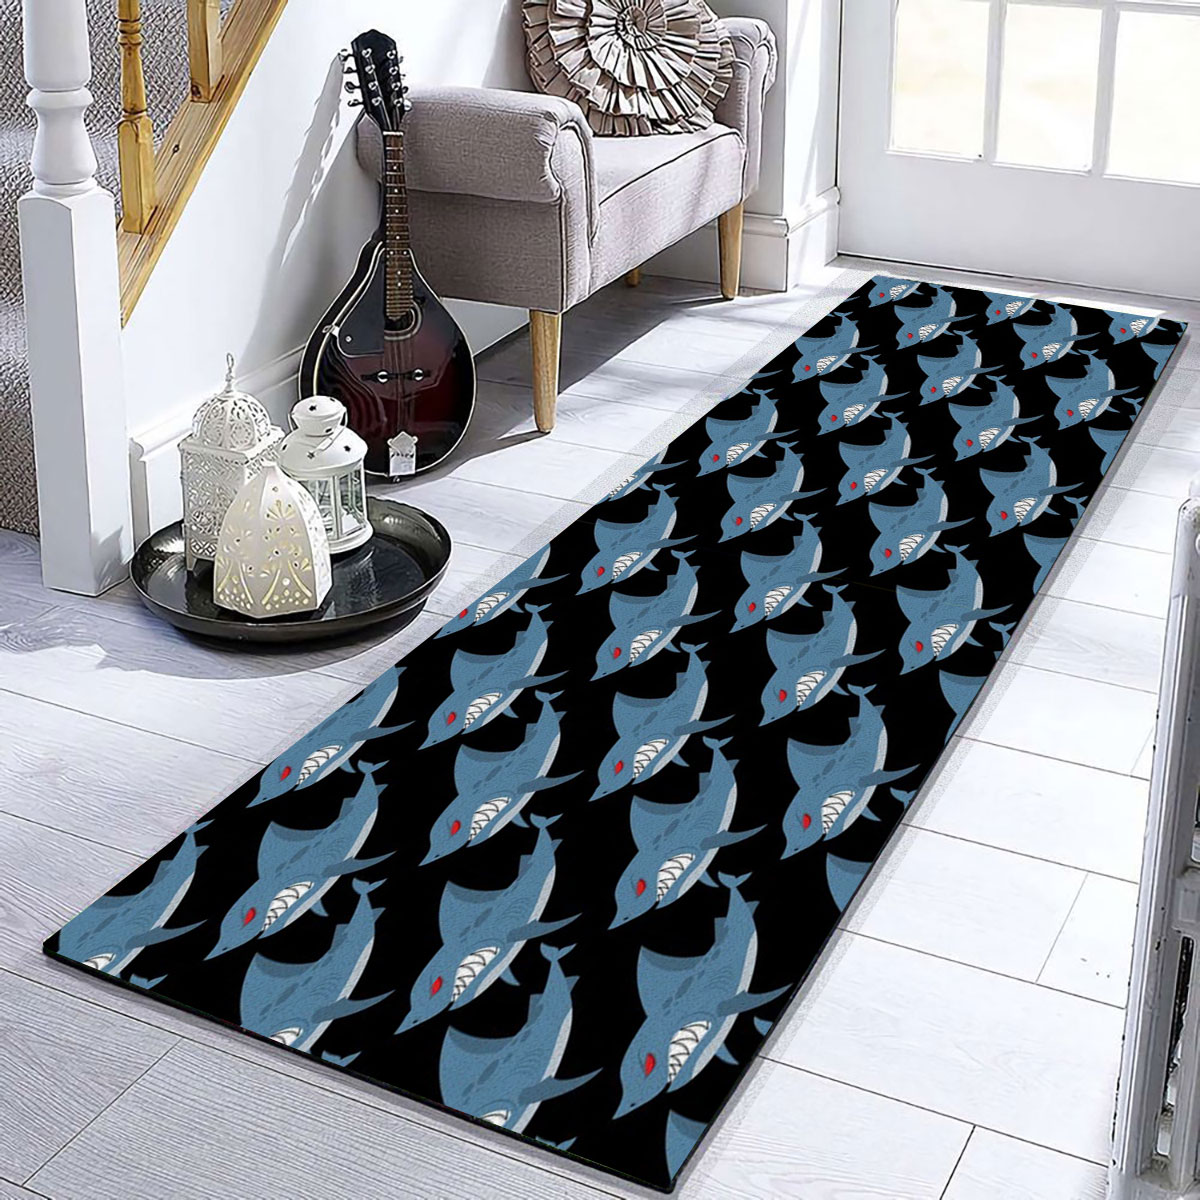 Ferocious Great White Shark Runner Carpet